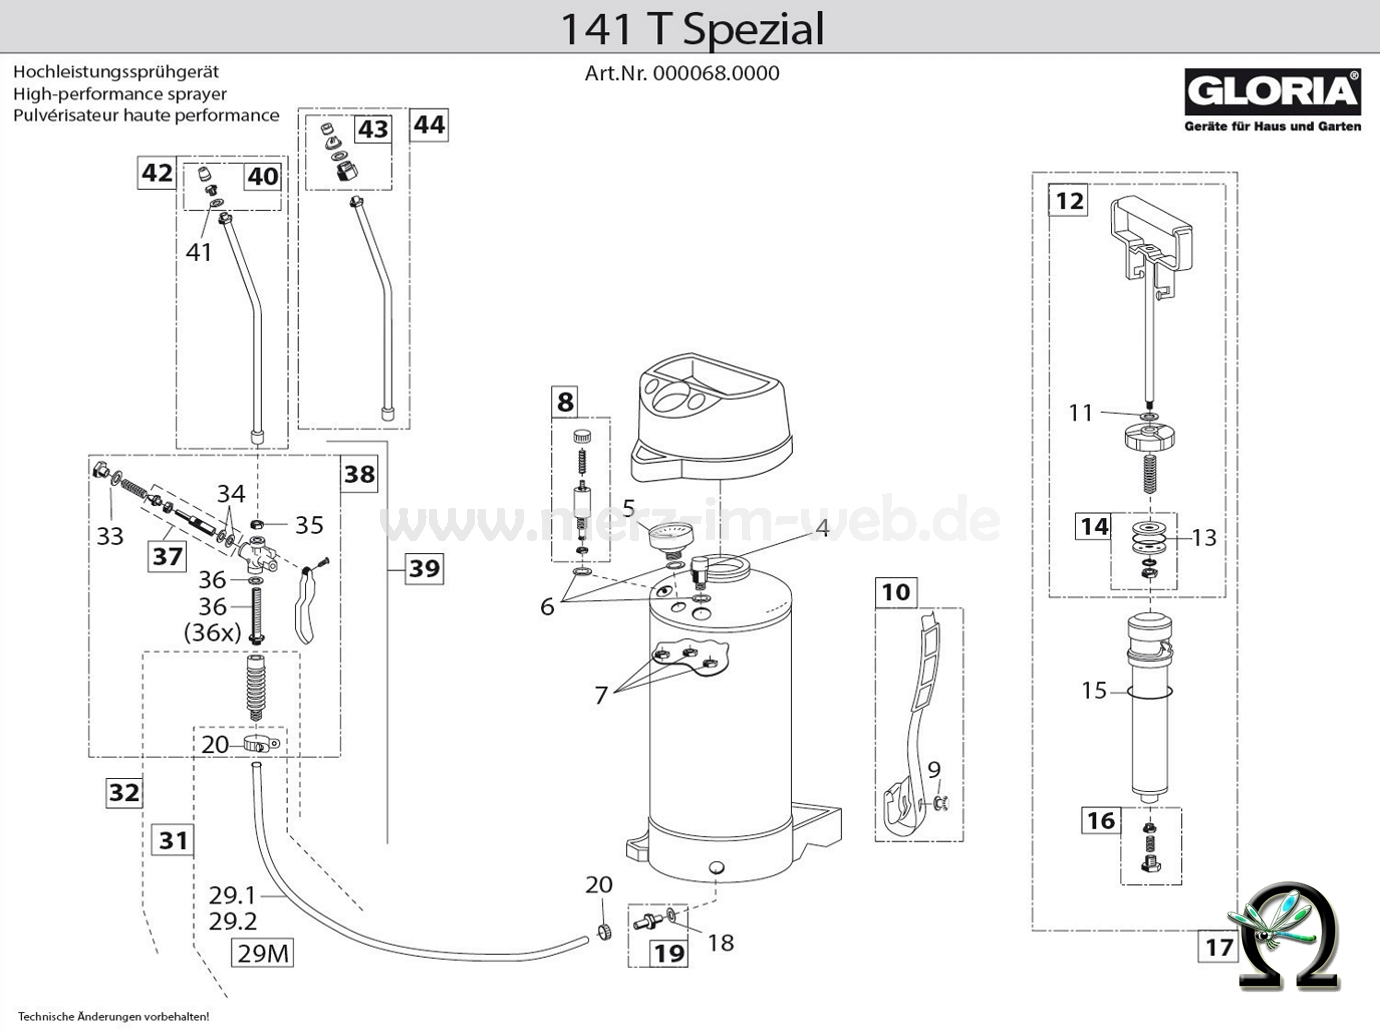 Die Ersatzteilzeichnung mit der Teileliste für das Gloria Hochleistungssprühgerät 141 T Spezial zum herunterladen und ausdrucken.